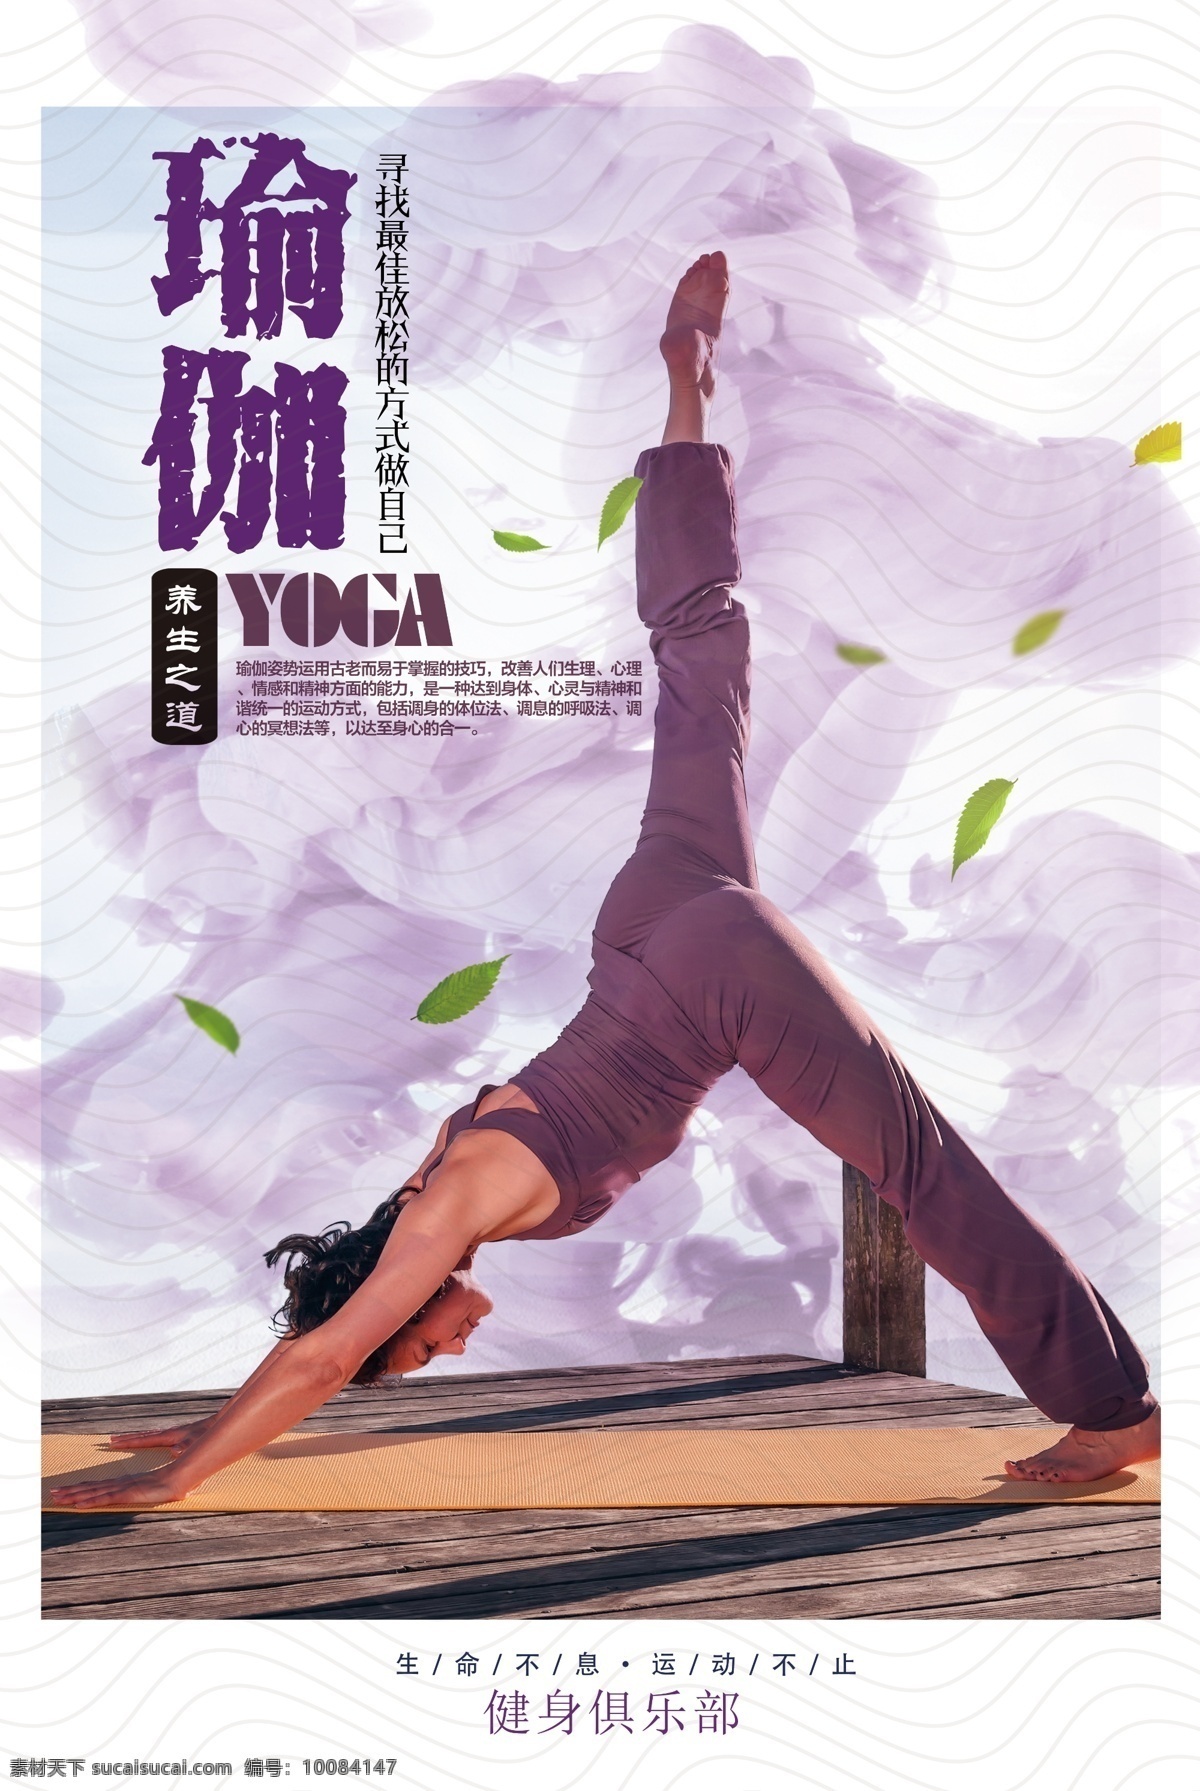 瑜伽 紫色 瑜伽海报 瑜伽广告 瑜伽美女 创意 瑜伽展板 瑜伽文化 印度瑜伽 瑜伽养生 瑜伽身材 瑜伽画册 瑜伽图片 瑜伽传单 瑜伽紫色